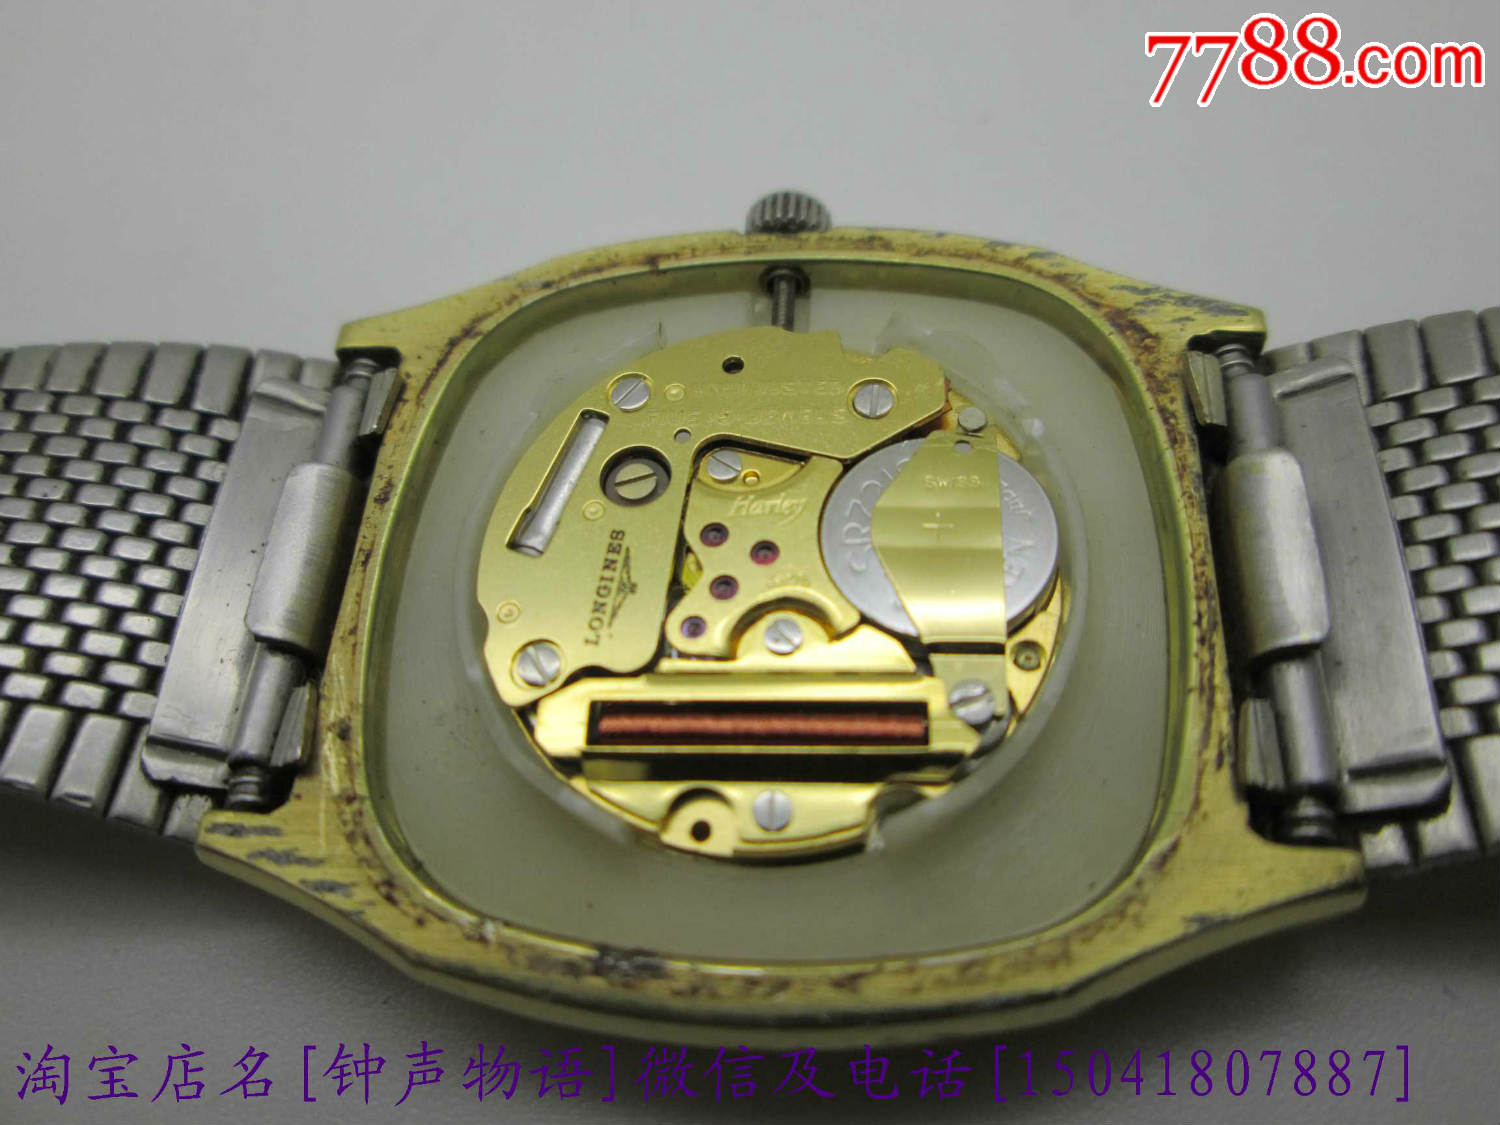 原装正品浪琴石英表-se34116863-手表/腕表-零售-7788